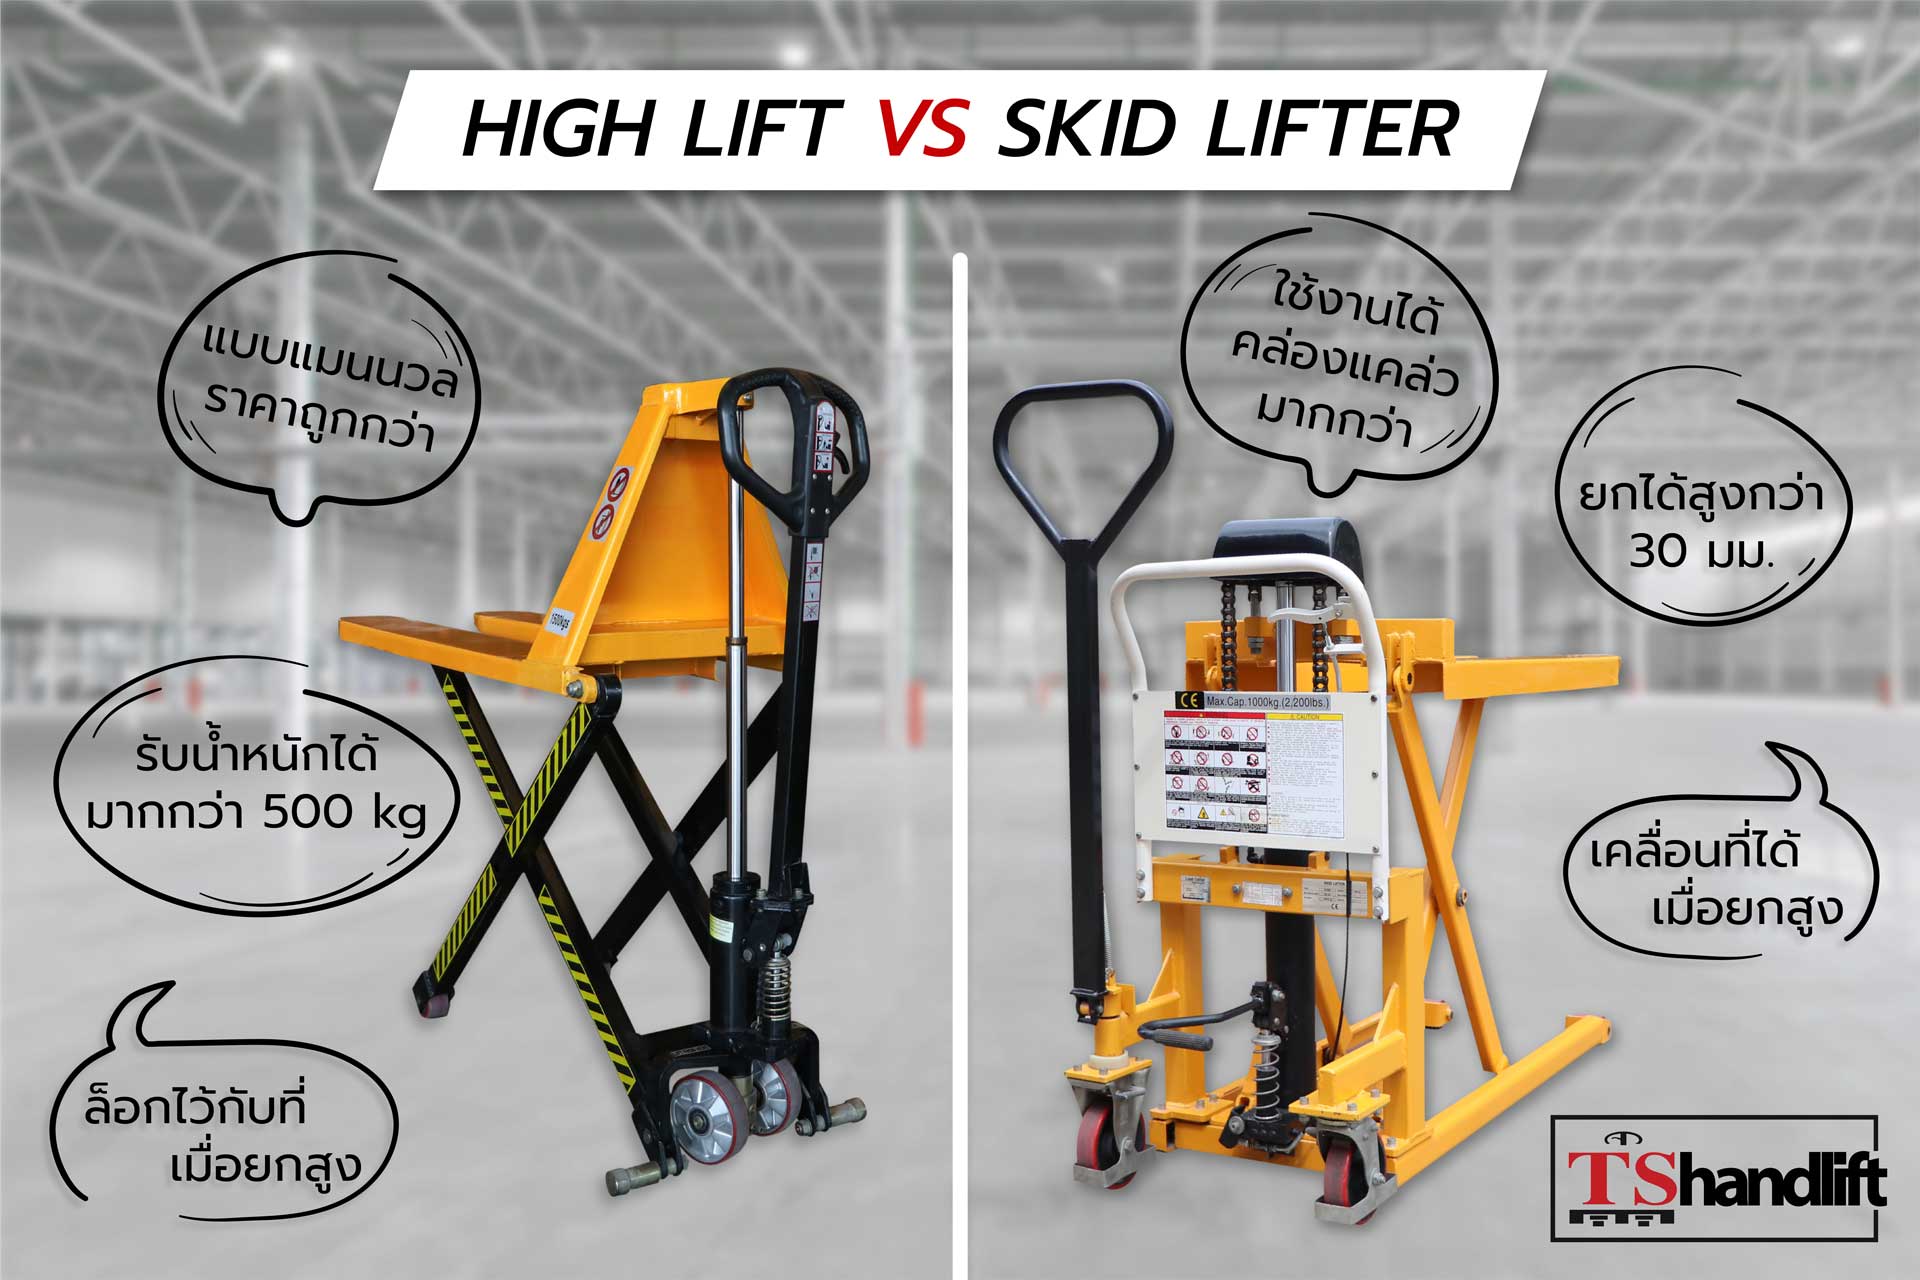 สรุปเปรียบเทียบแฮนด์ลิฟท์ยกสูง hight lift กับ skid lifter